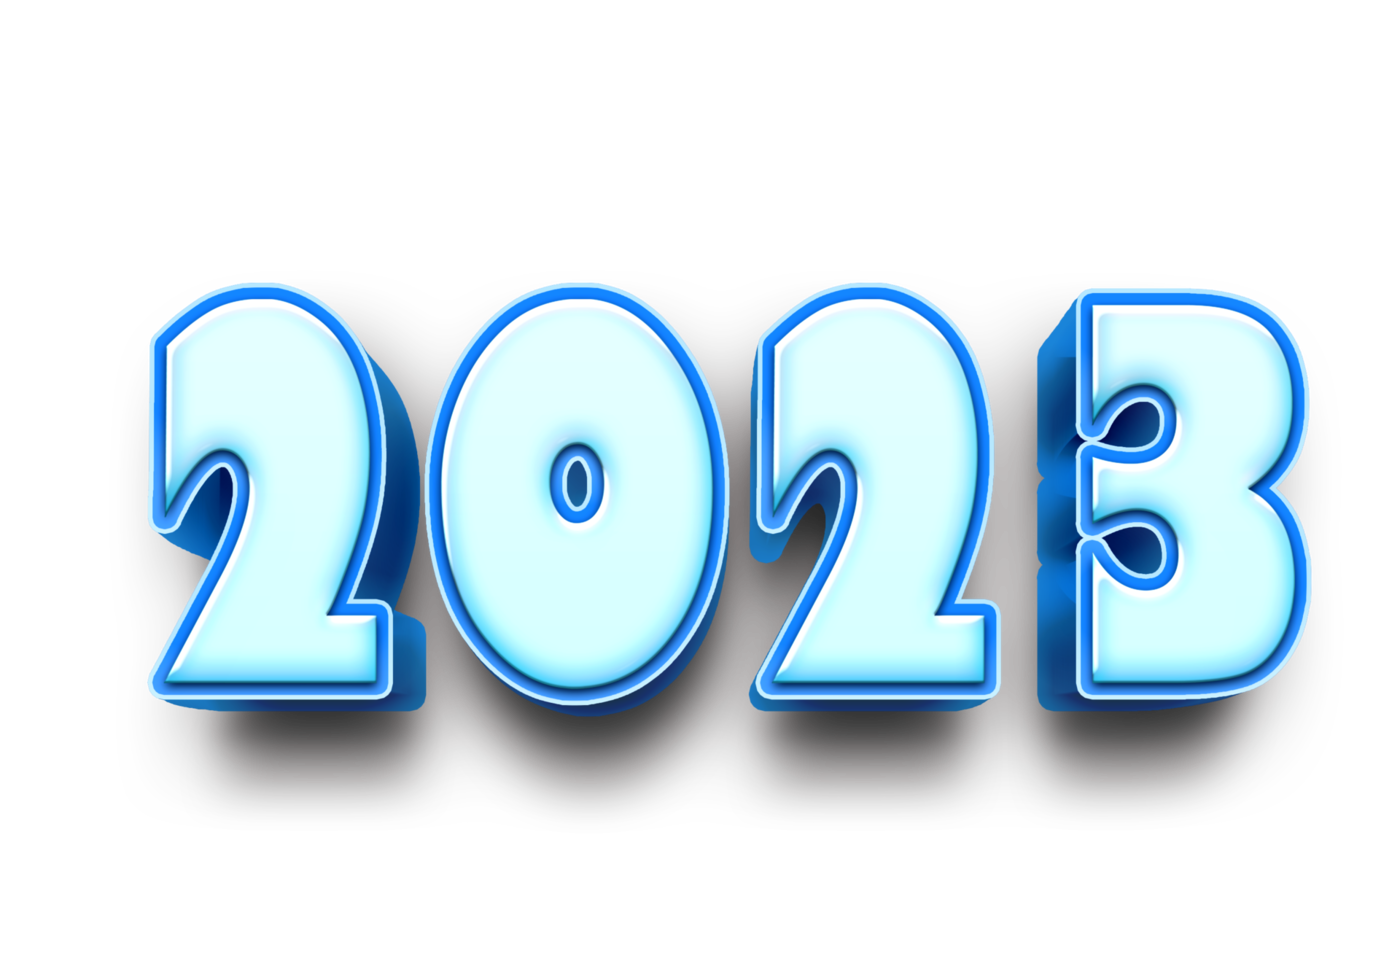 2023 texte nombre année 3d maquette la glace bleu png